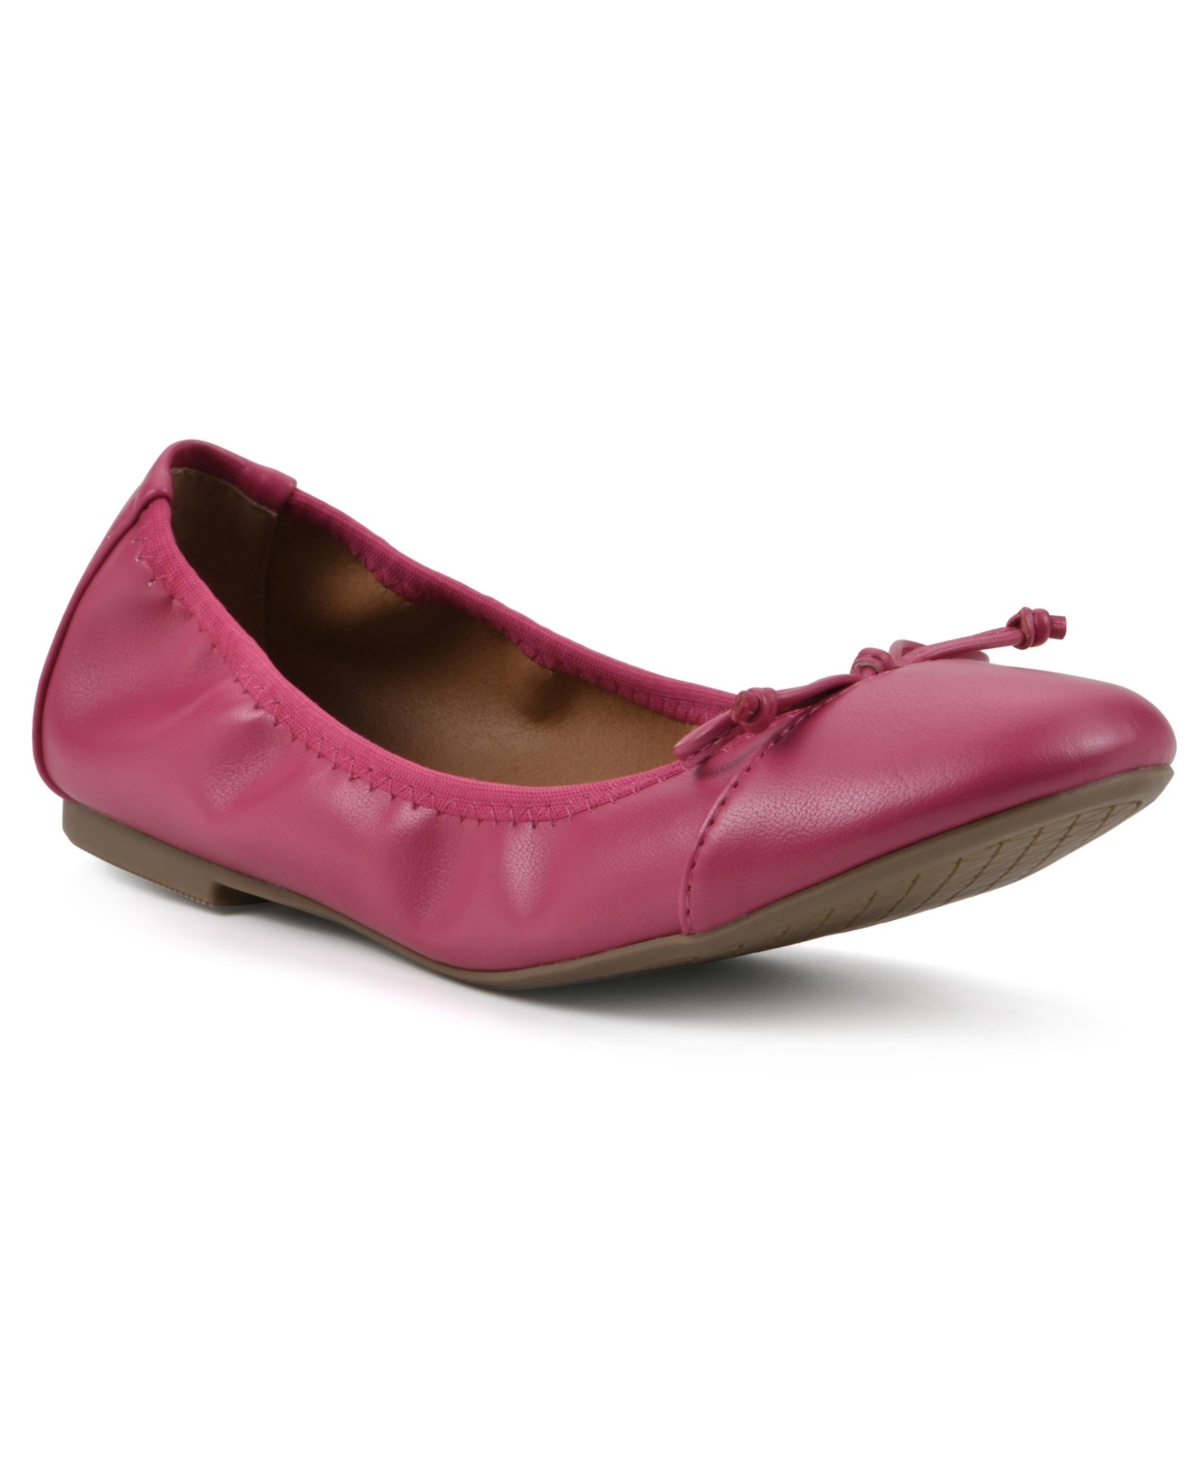 Women's Sunnyside Ii Ballet Flats - Super Pink Smooth